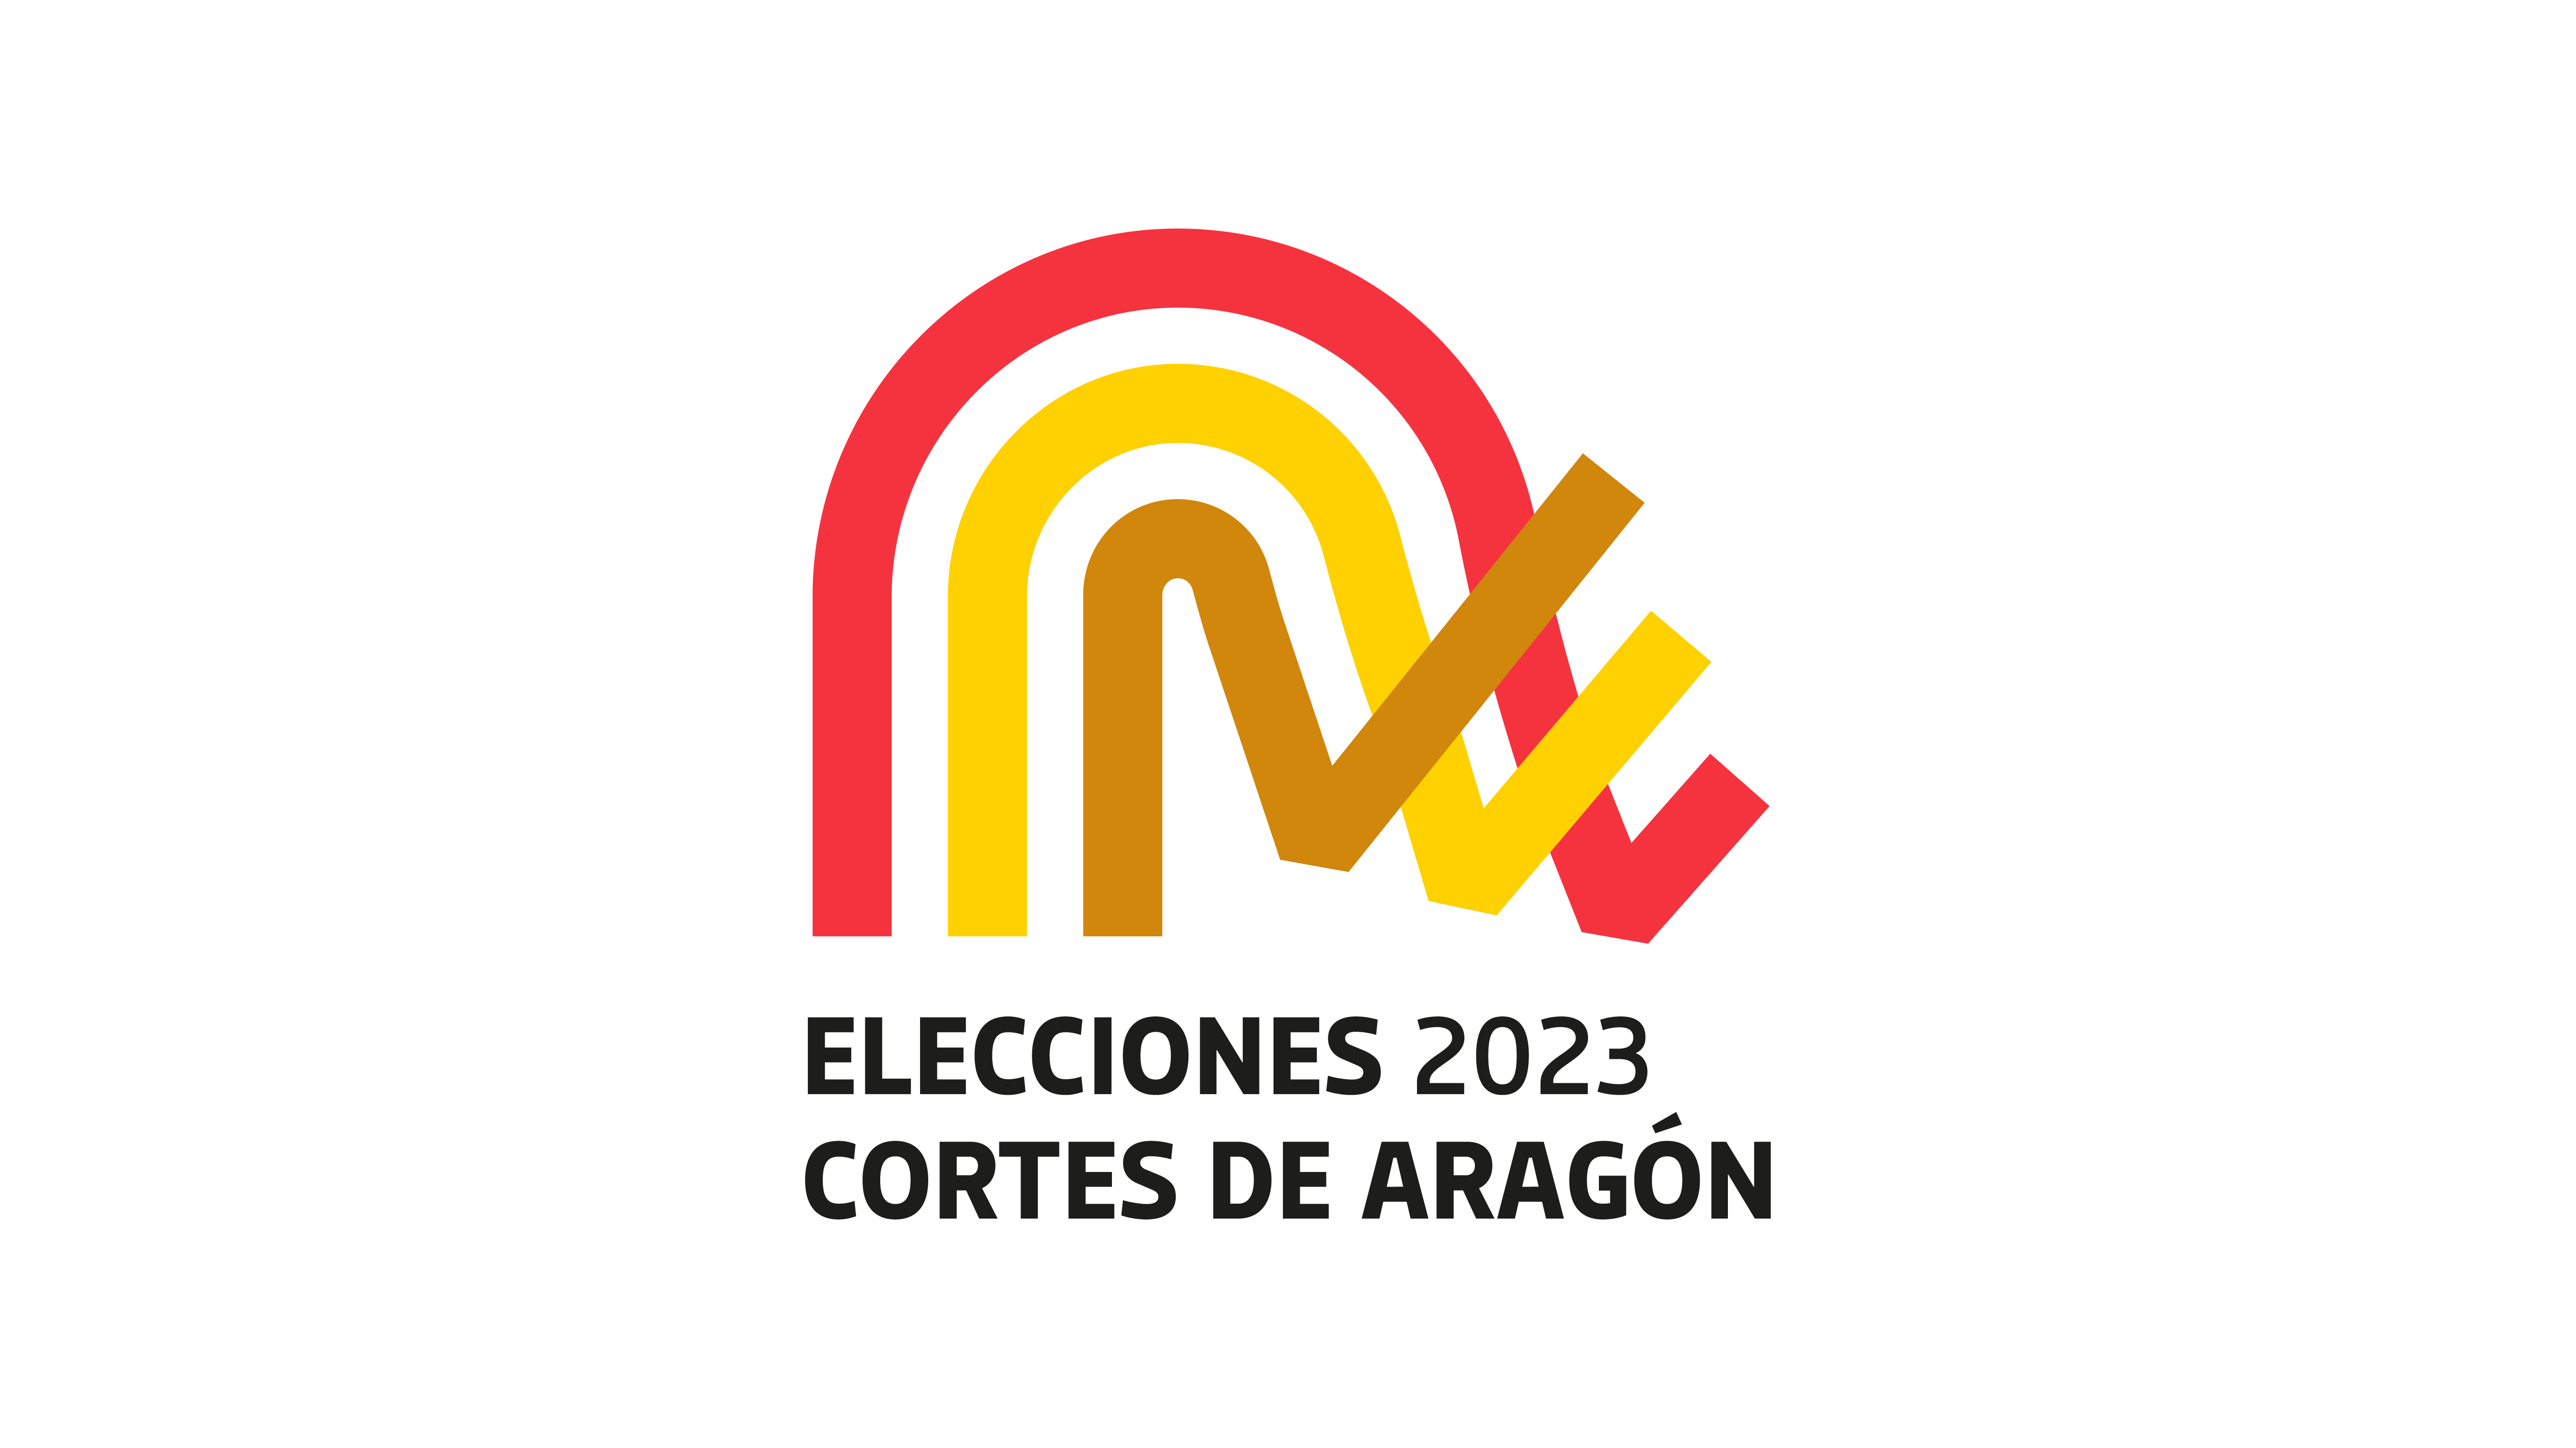 Logotipo de las elecciones a Cortes de Aragón 2023 inspirado en el salón de plenos de las Cortes y con la gama cromática de la bandera de Aragón